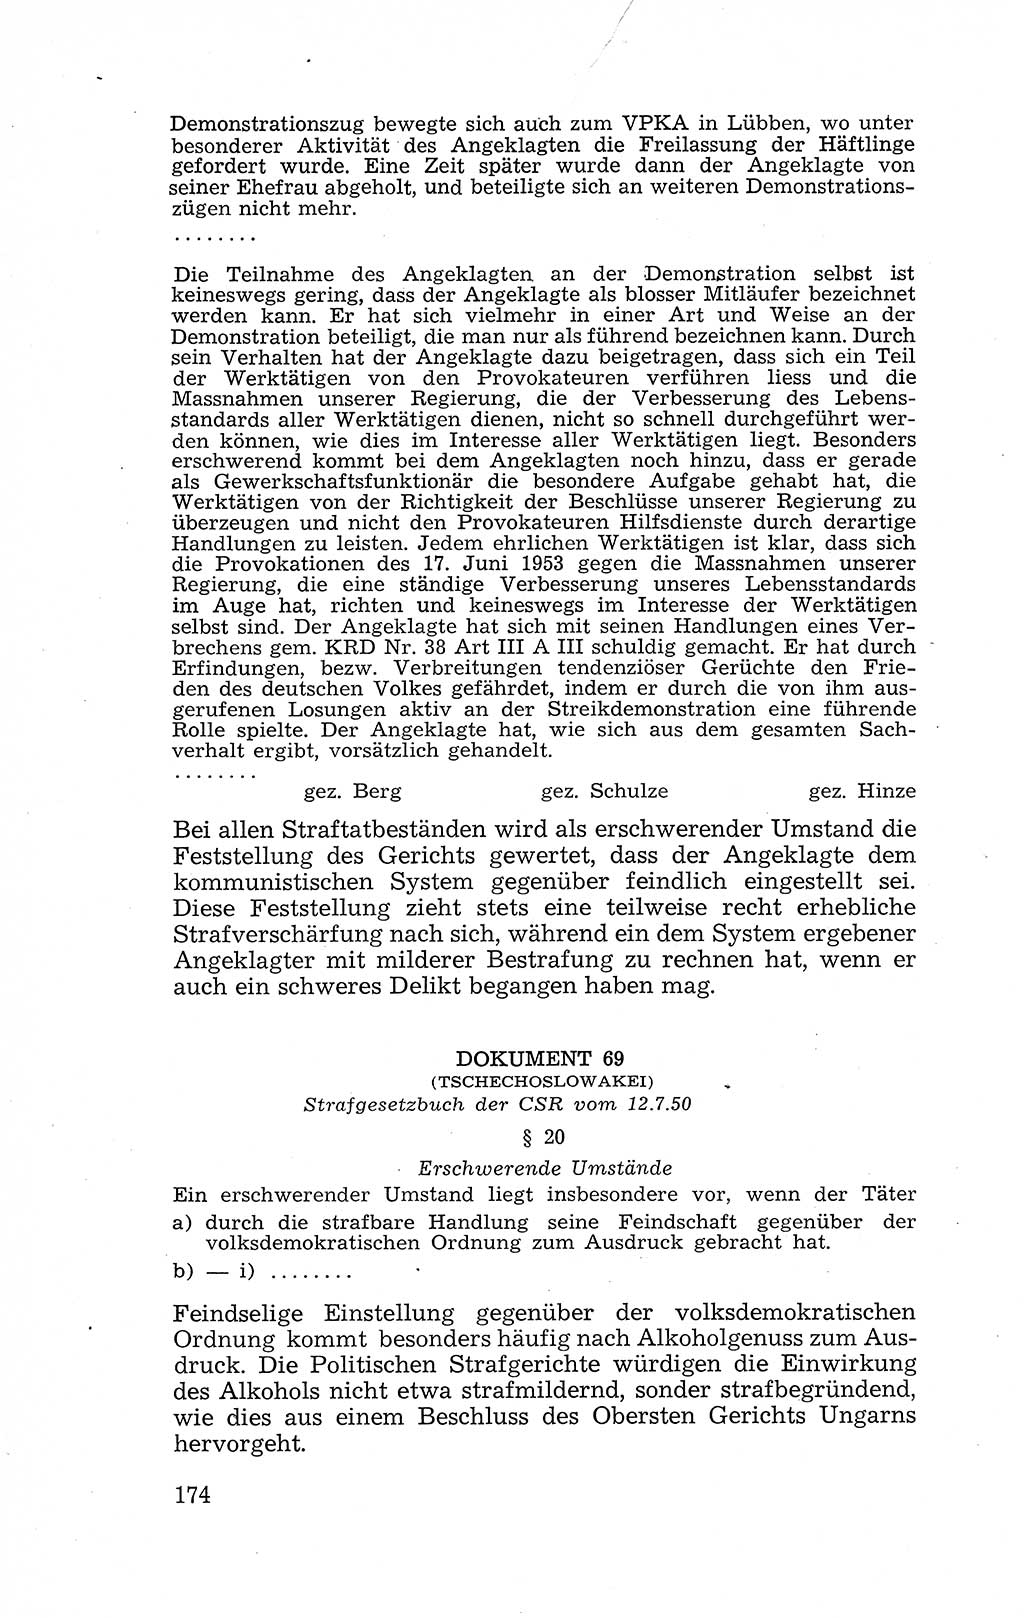 Recht in Fesseln, Dokumente, Internationale Juristen-Kommission [Bundesrepublik Deutschland (BRD)] 1955, Seite 174 (R. Dok. IJK BRD 1955, S. 174)